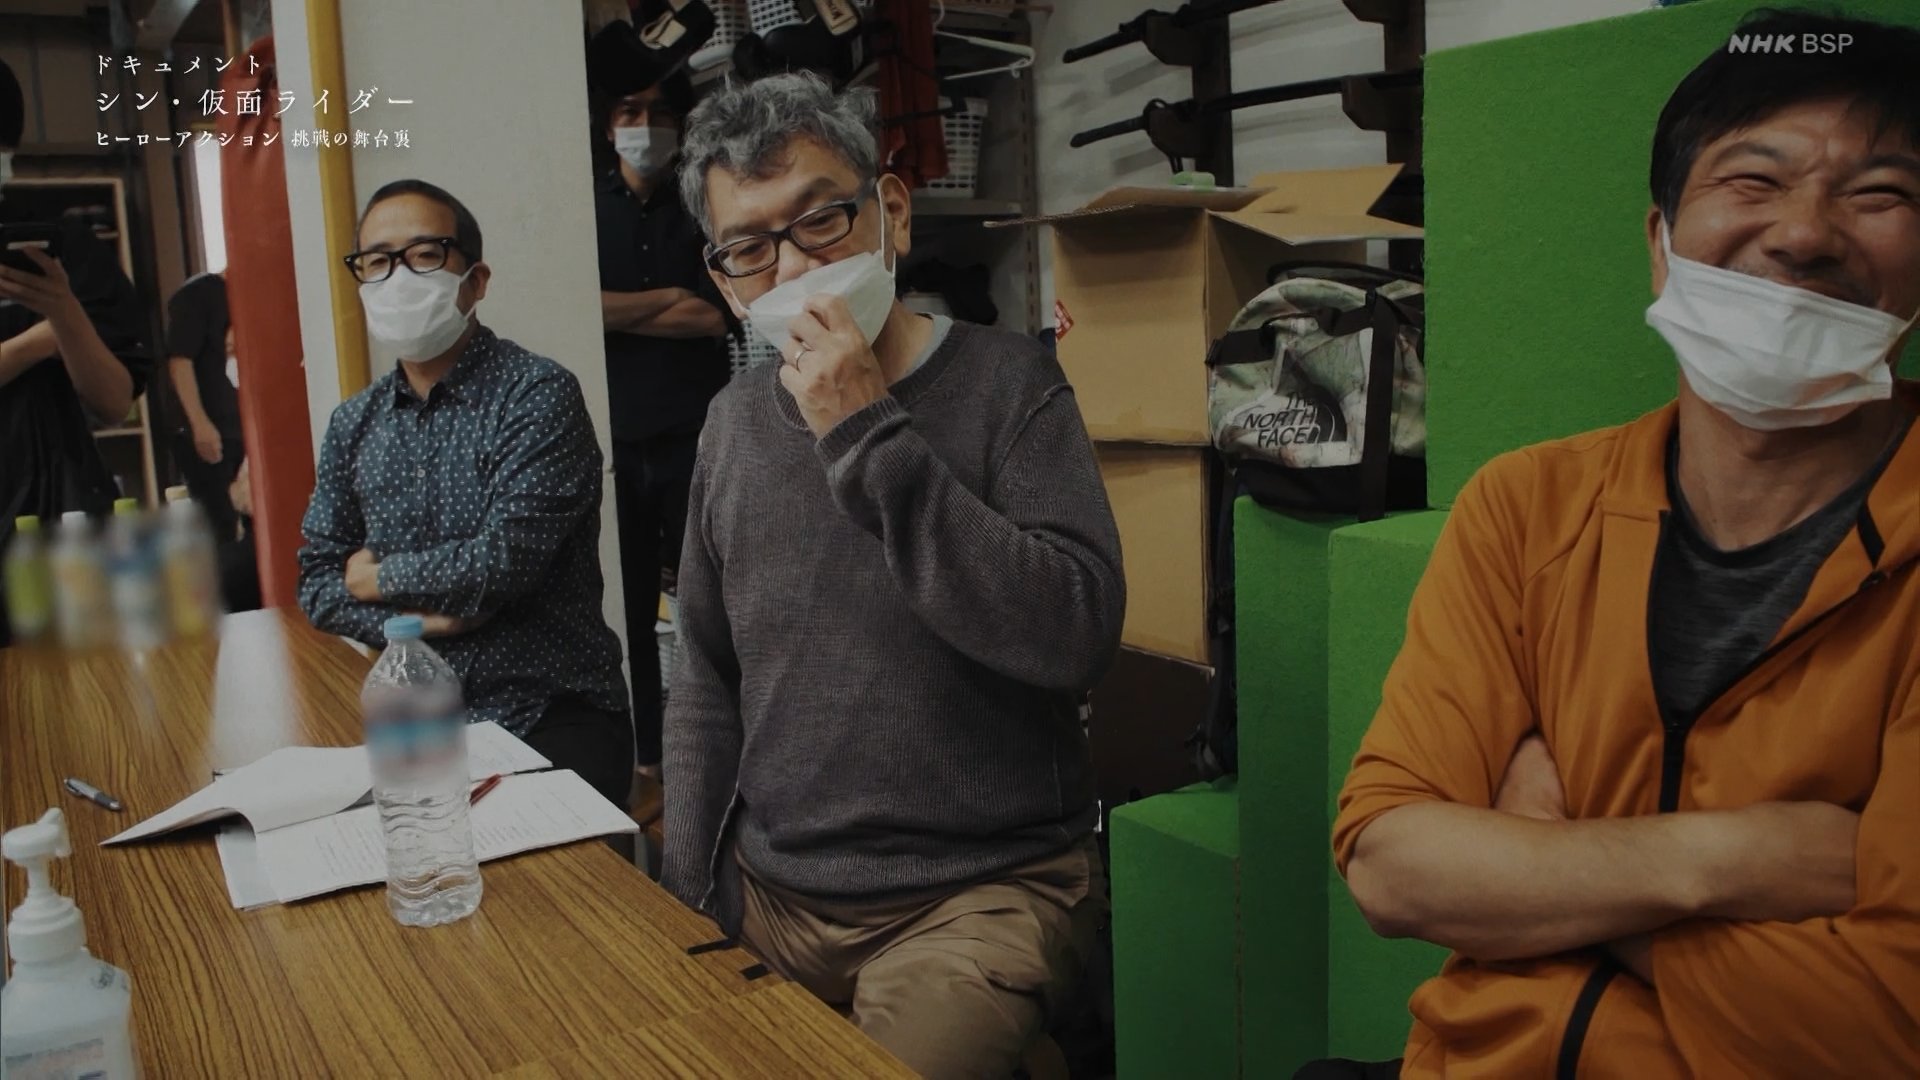 El cineasta Hideaki Anno, tomará un descanso después de 30 años 12